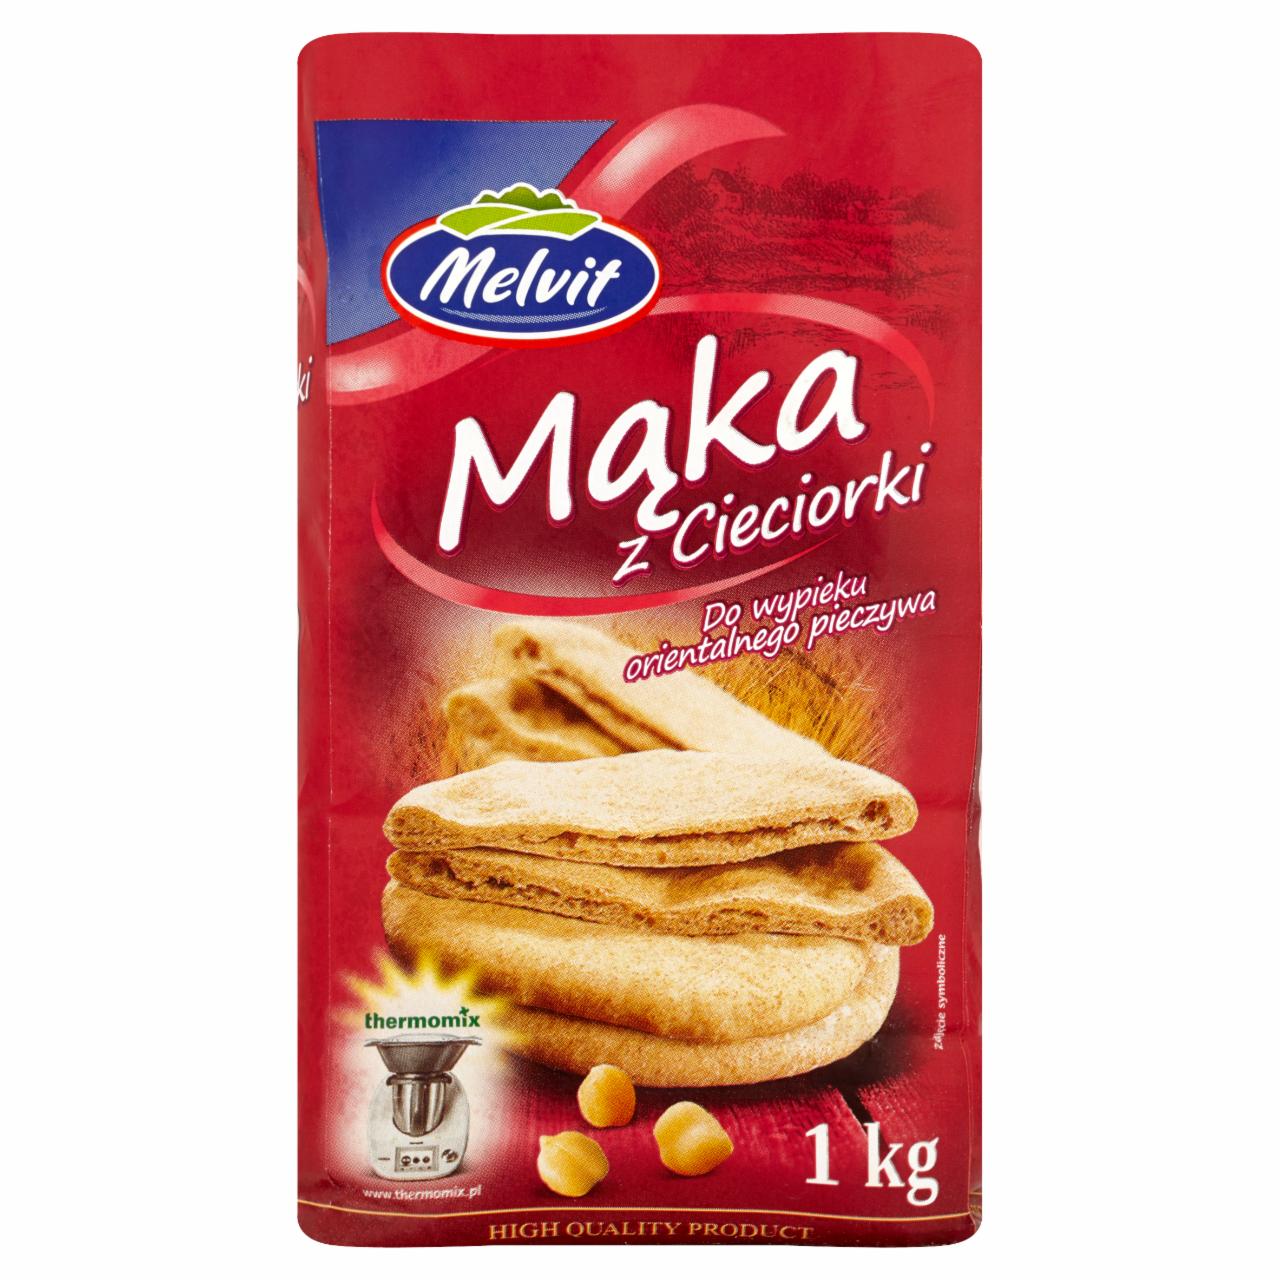 Zdjęcia - Melvit Mąka z cieciorki do wypieku orientalnego pieczywa 1 kg